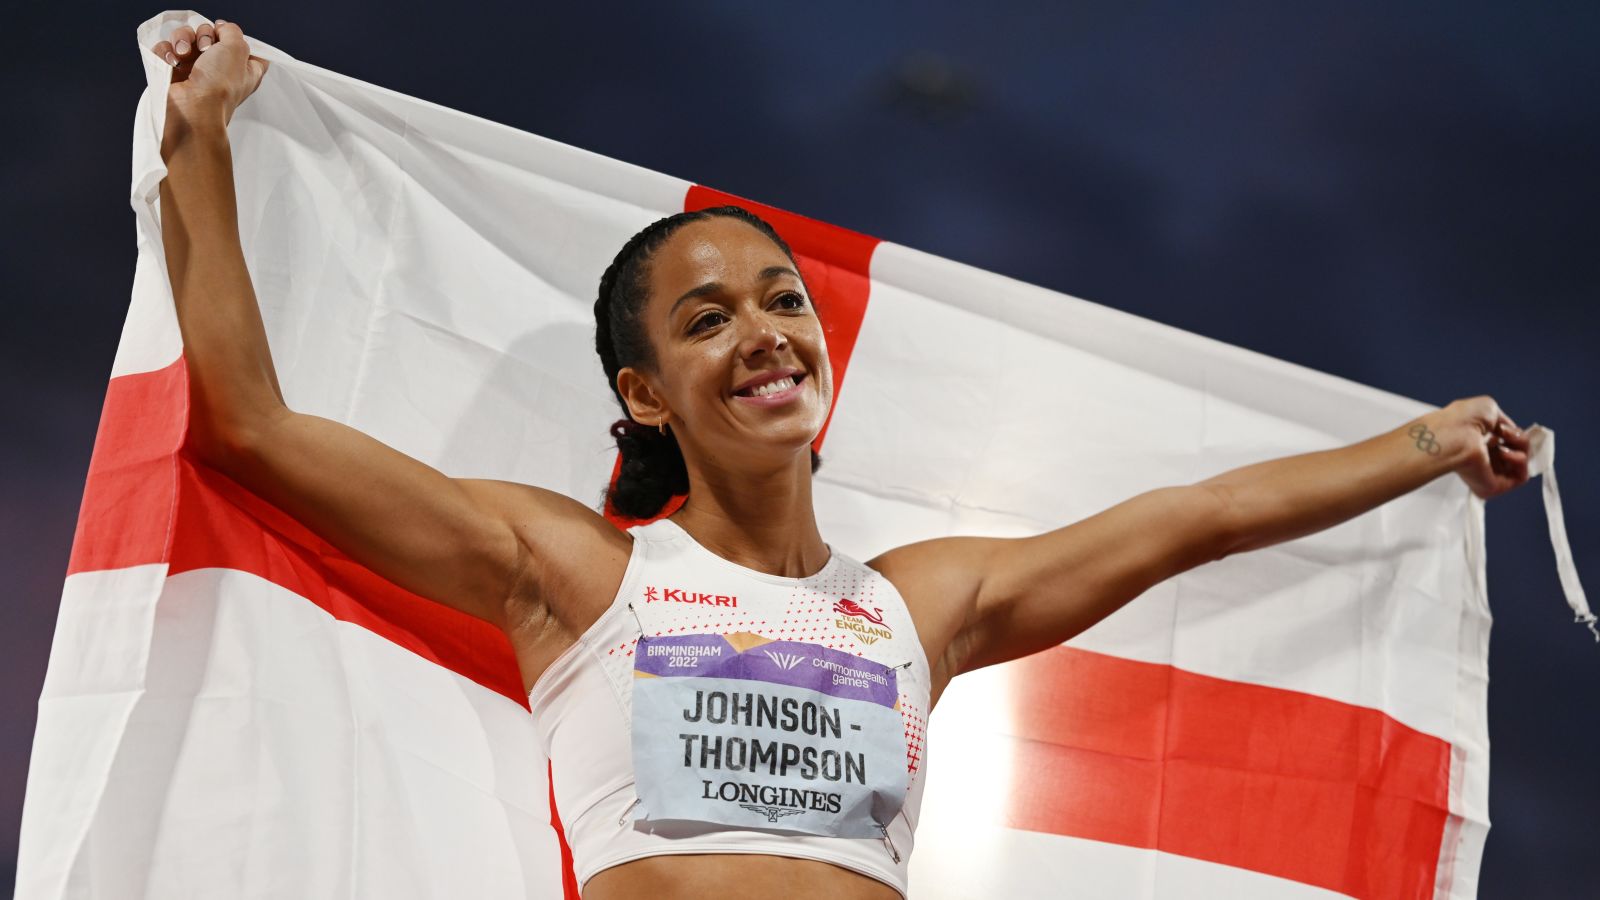 Liverpool's Katarina JohnsonThompson wins heptathlon gold at